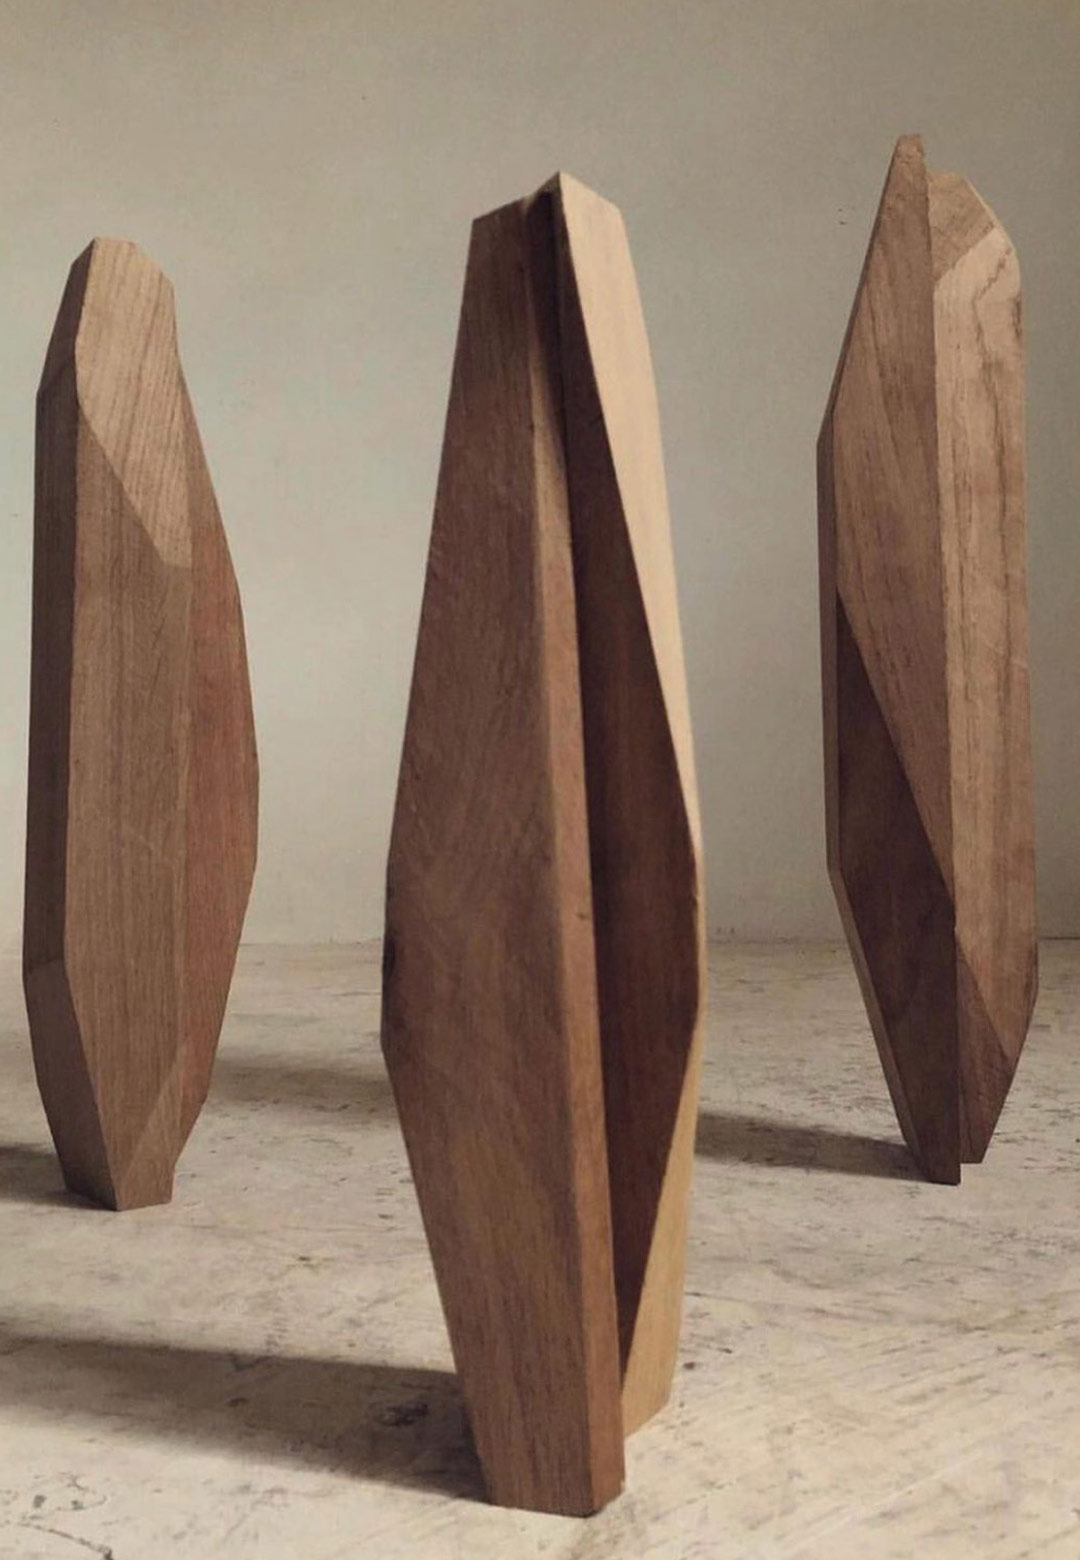 ‘Eden’ by Bastok Lessel unveils Jean-Guillaume Mathiaut’s exploration with wood